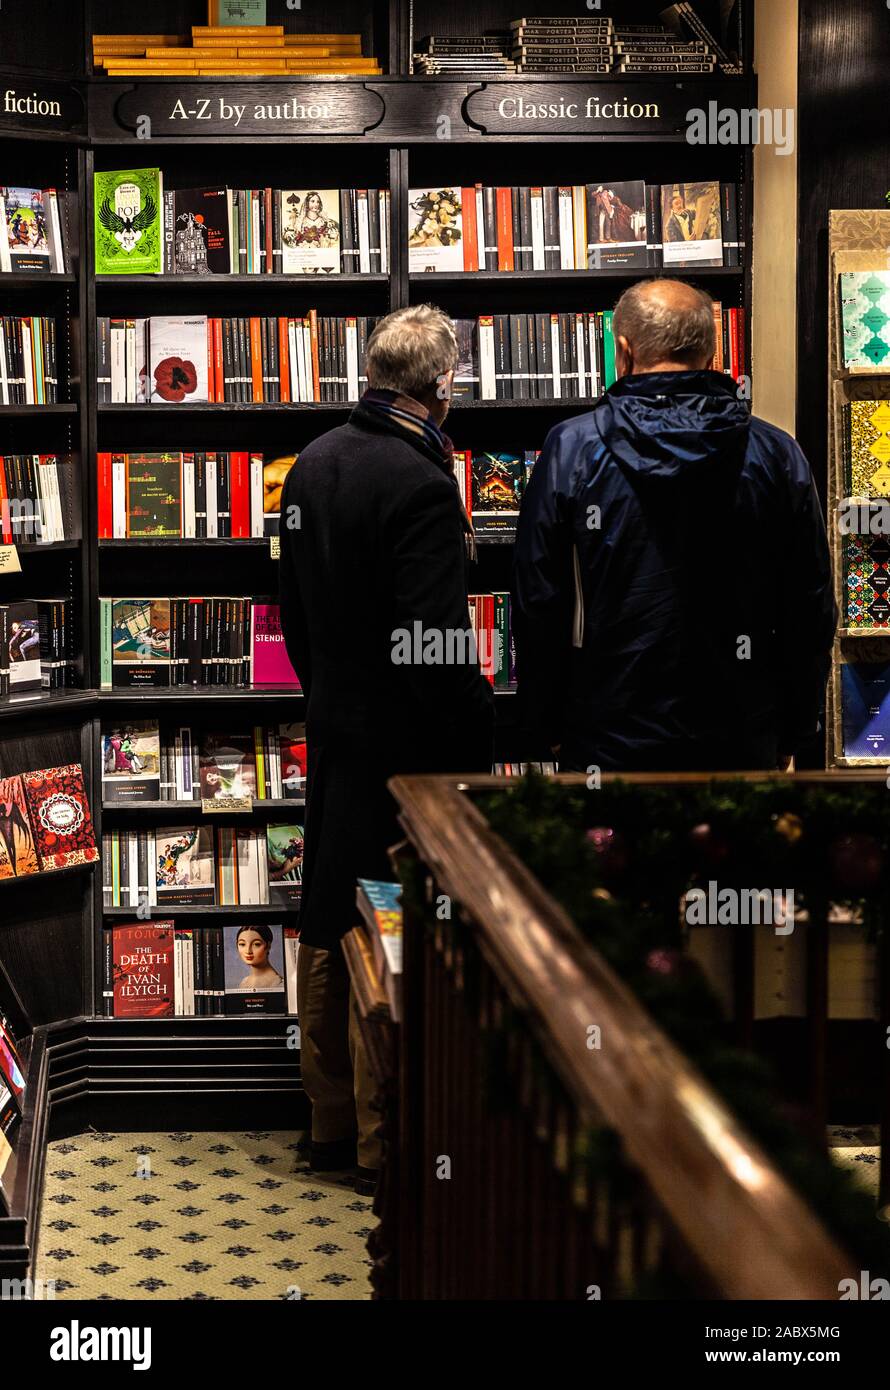 Ritratto della vista posteriore di due uomini in piedi fianco a fianco di fronte a una libreria 'classica fiction', libreria Hatchards, Londra, Inghilterra, Regno Unito. Foto Stock